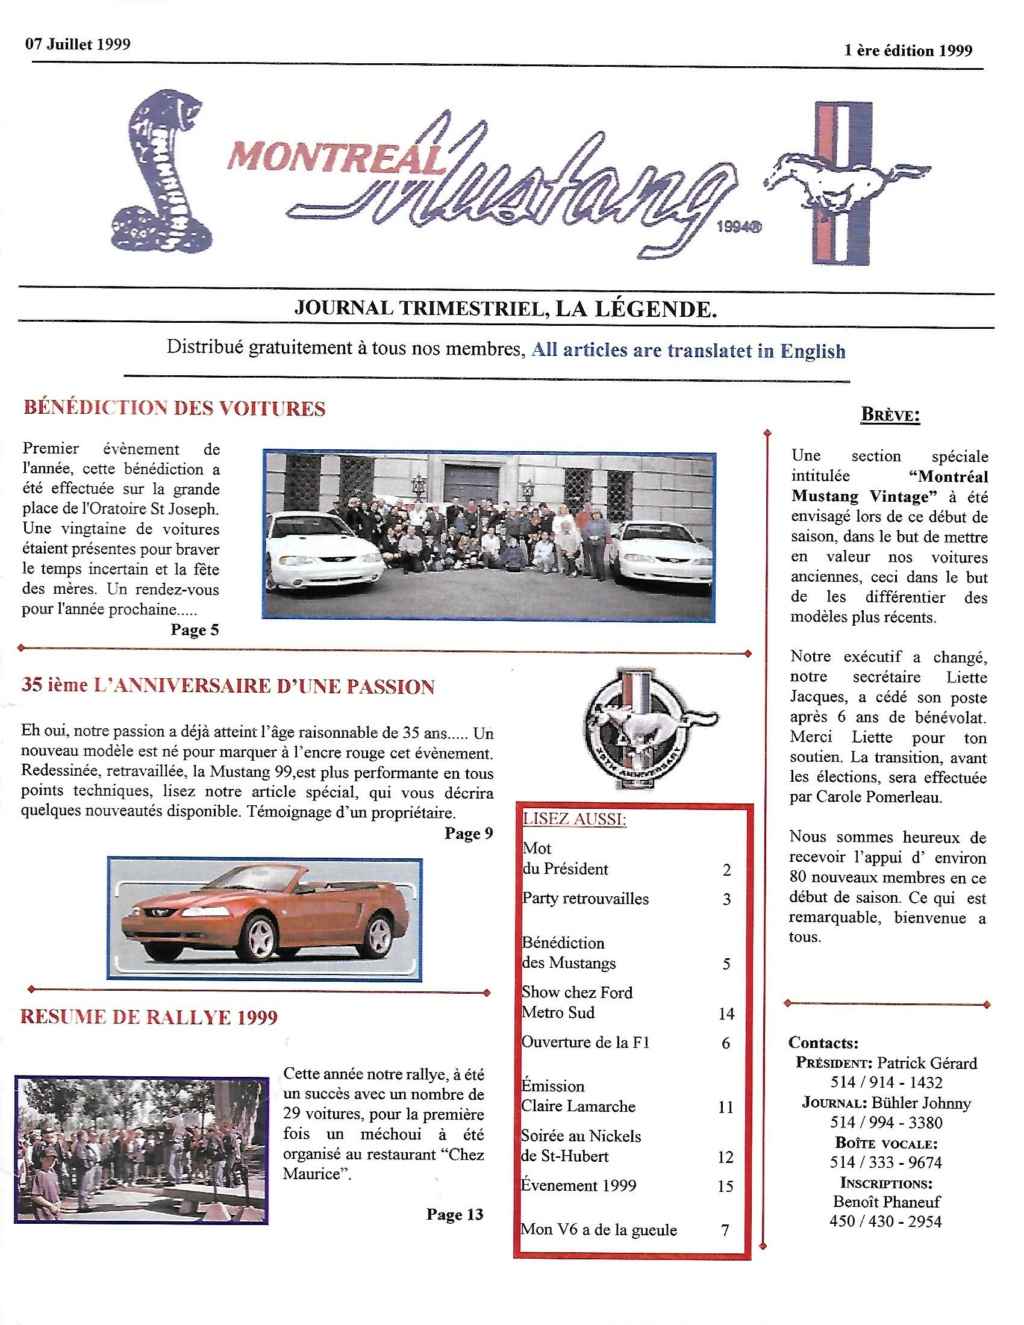 Montréal Mustang dans le temps! 1981 à aujourd'hui (Histoire en photos) - Page 9 1999-031